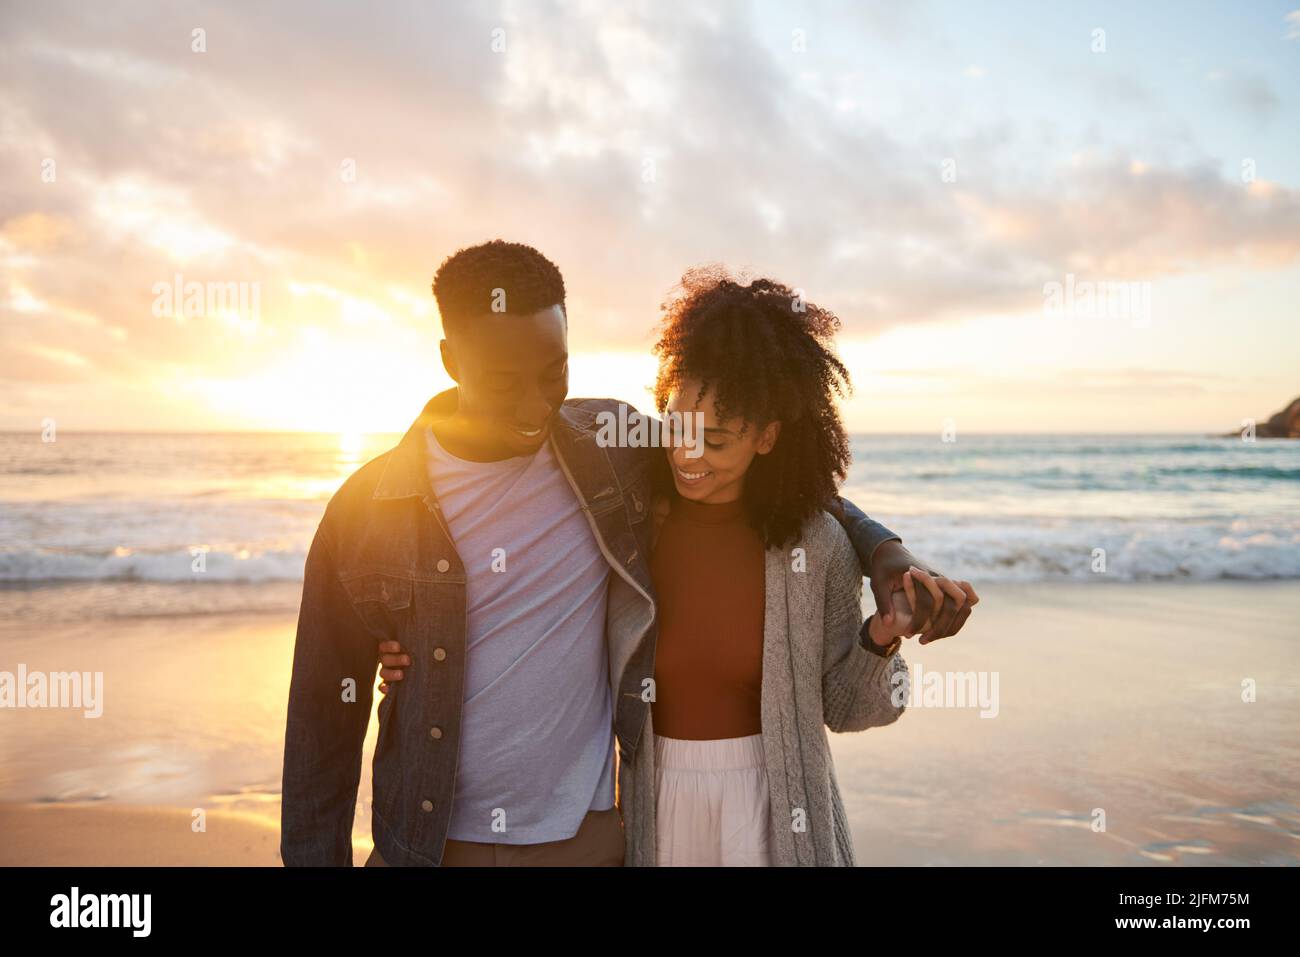 Sonriendo pareja multiétnica caminando de brazo en brazo en una playa al atardecer Foto de stock